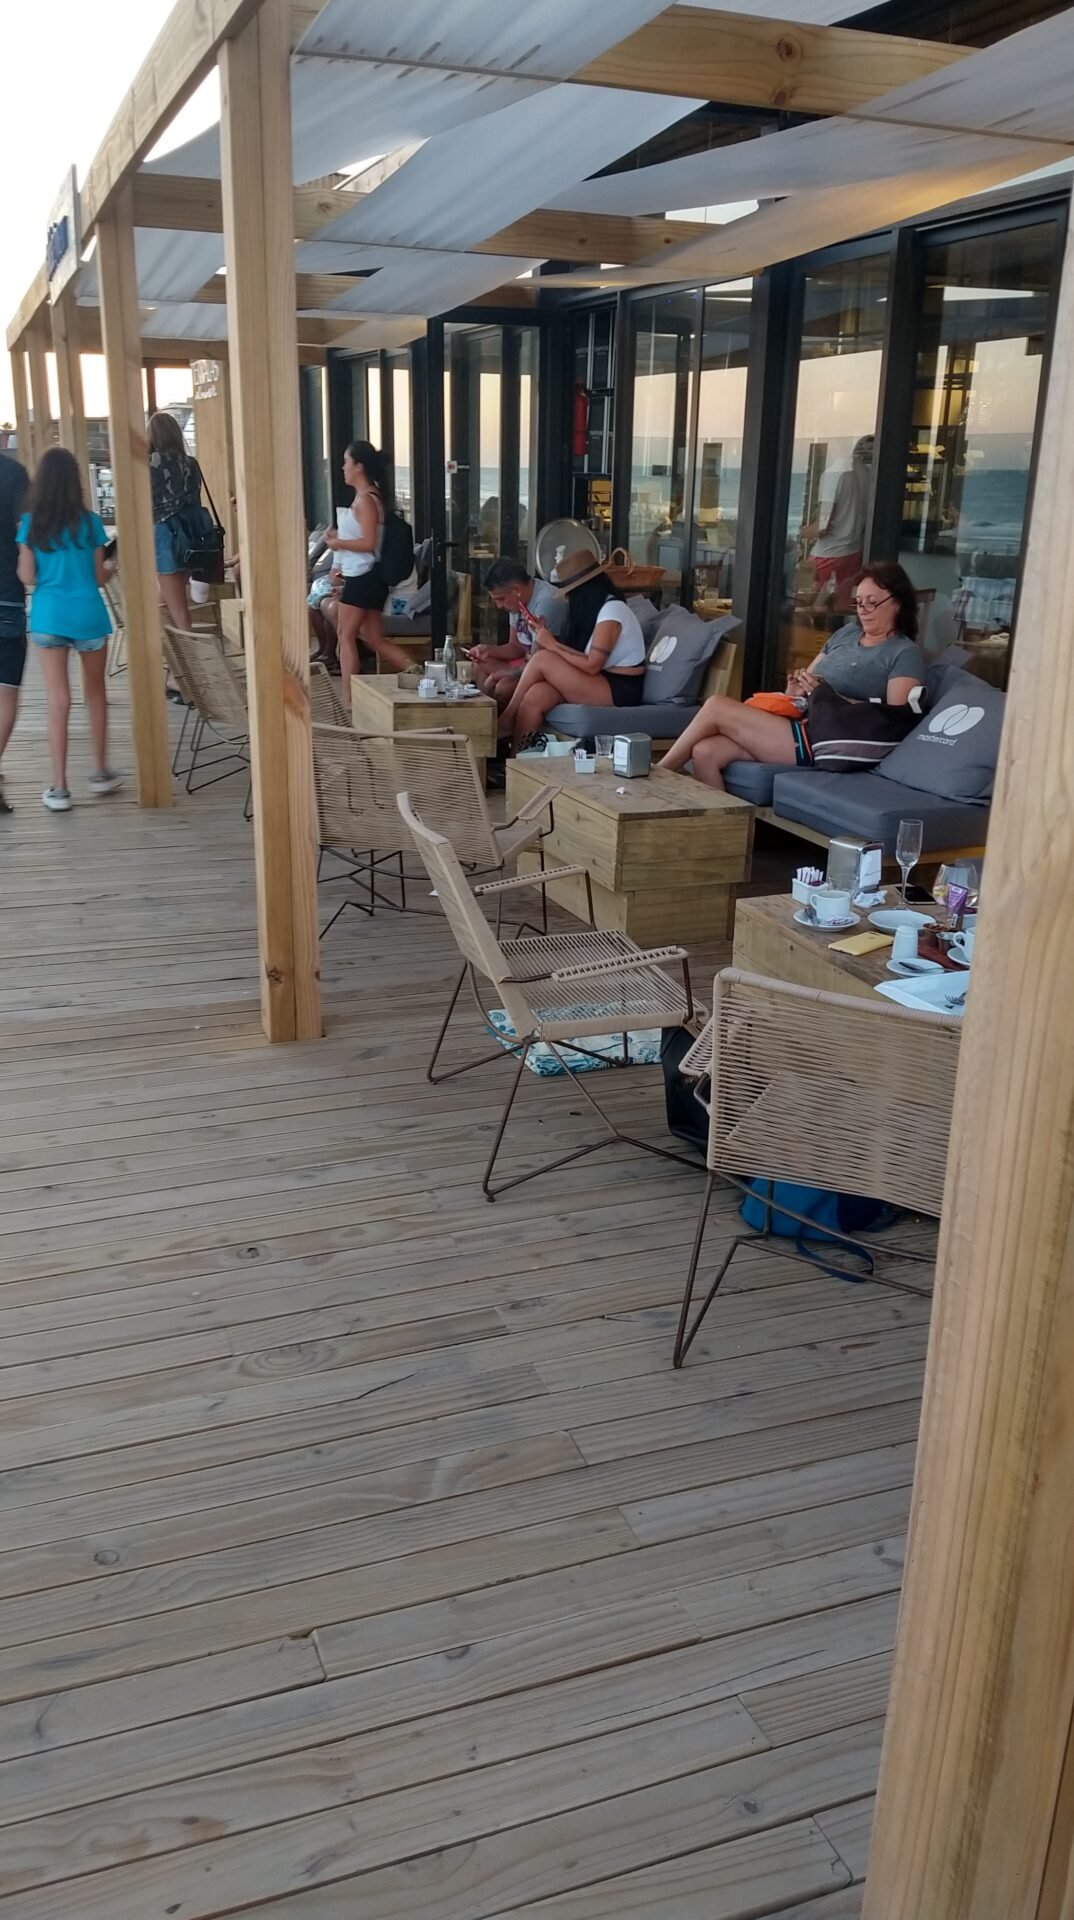 Sillon tihlon con apoyabrazos de increa en terraza en restaurante